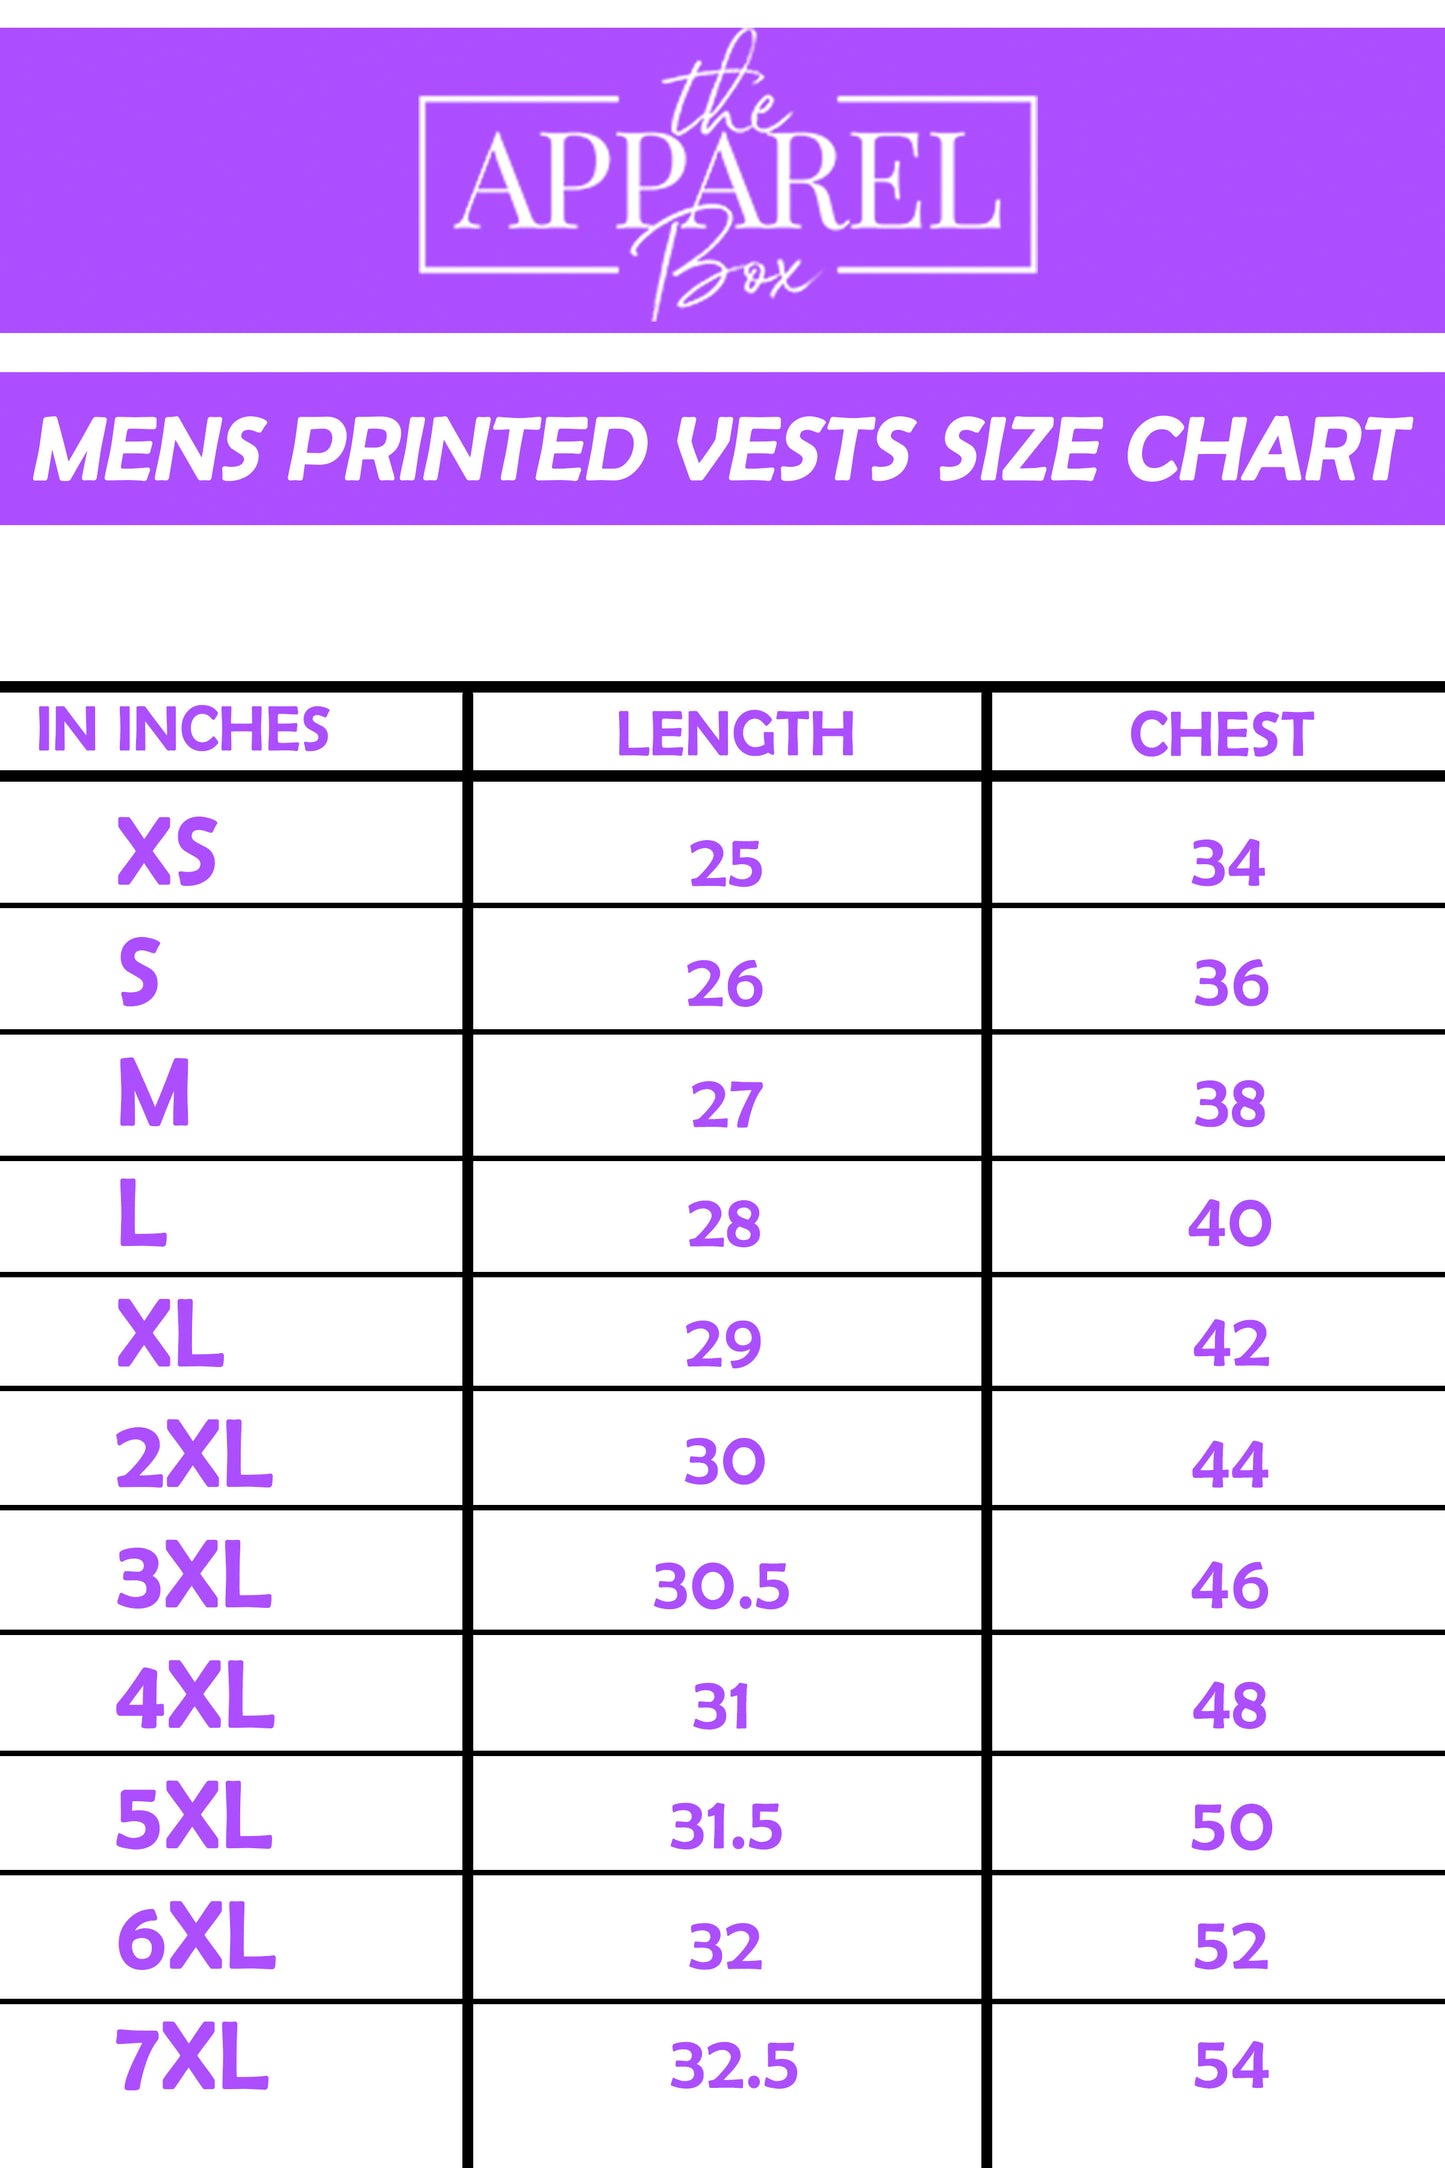 Printed Vest#21